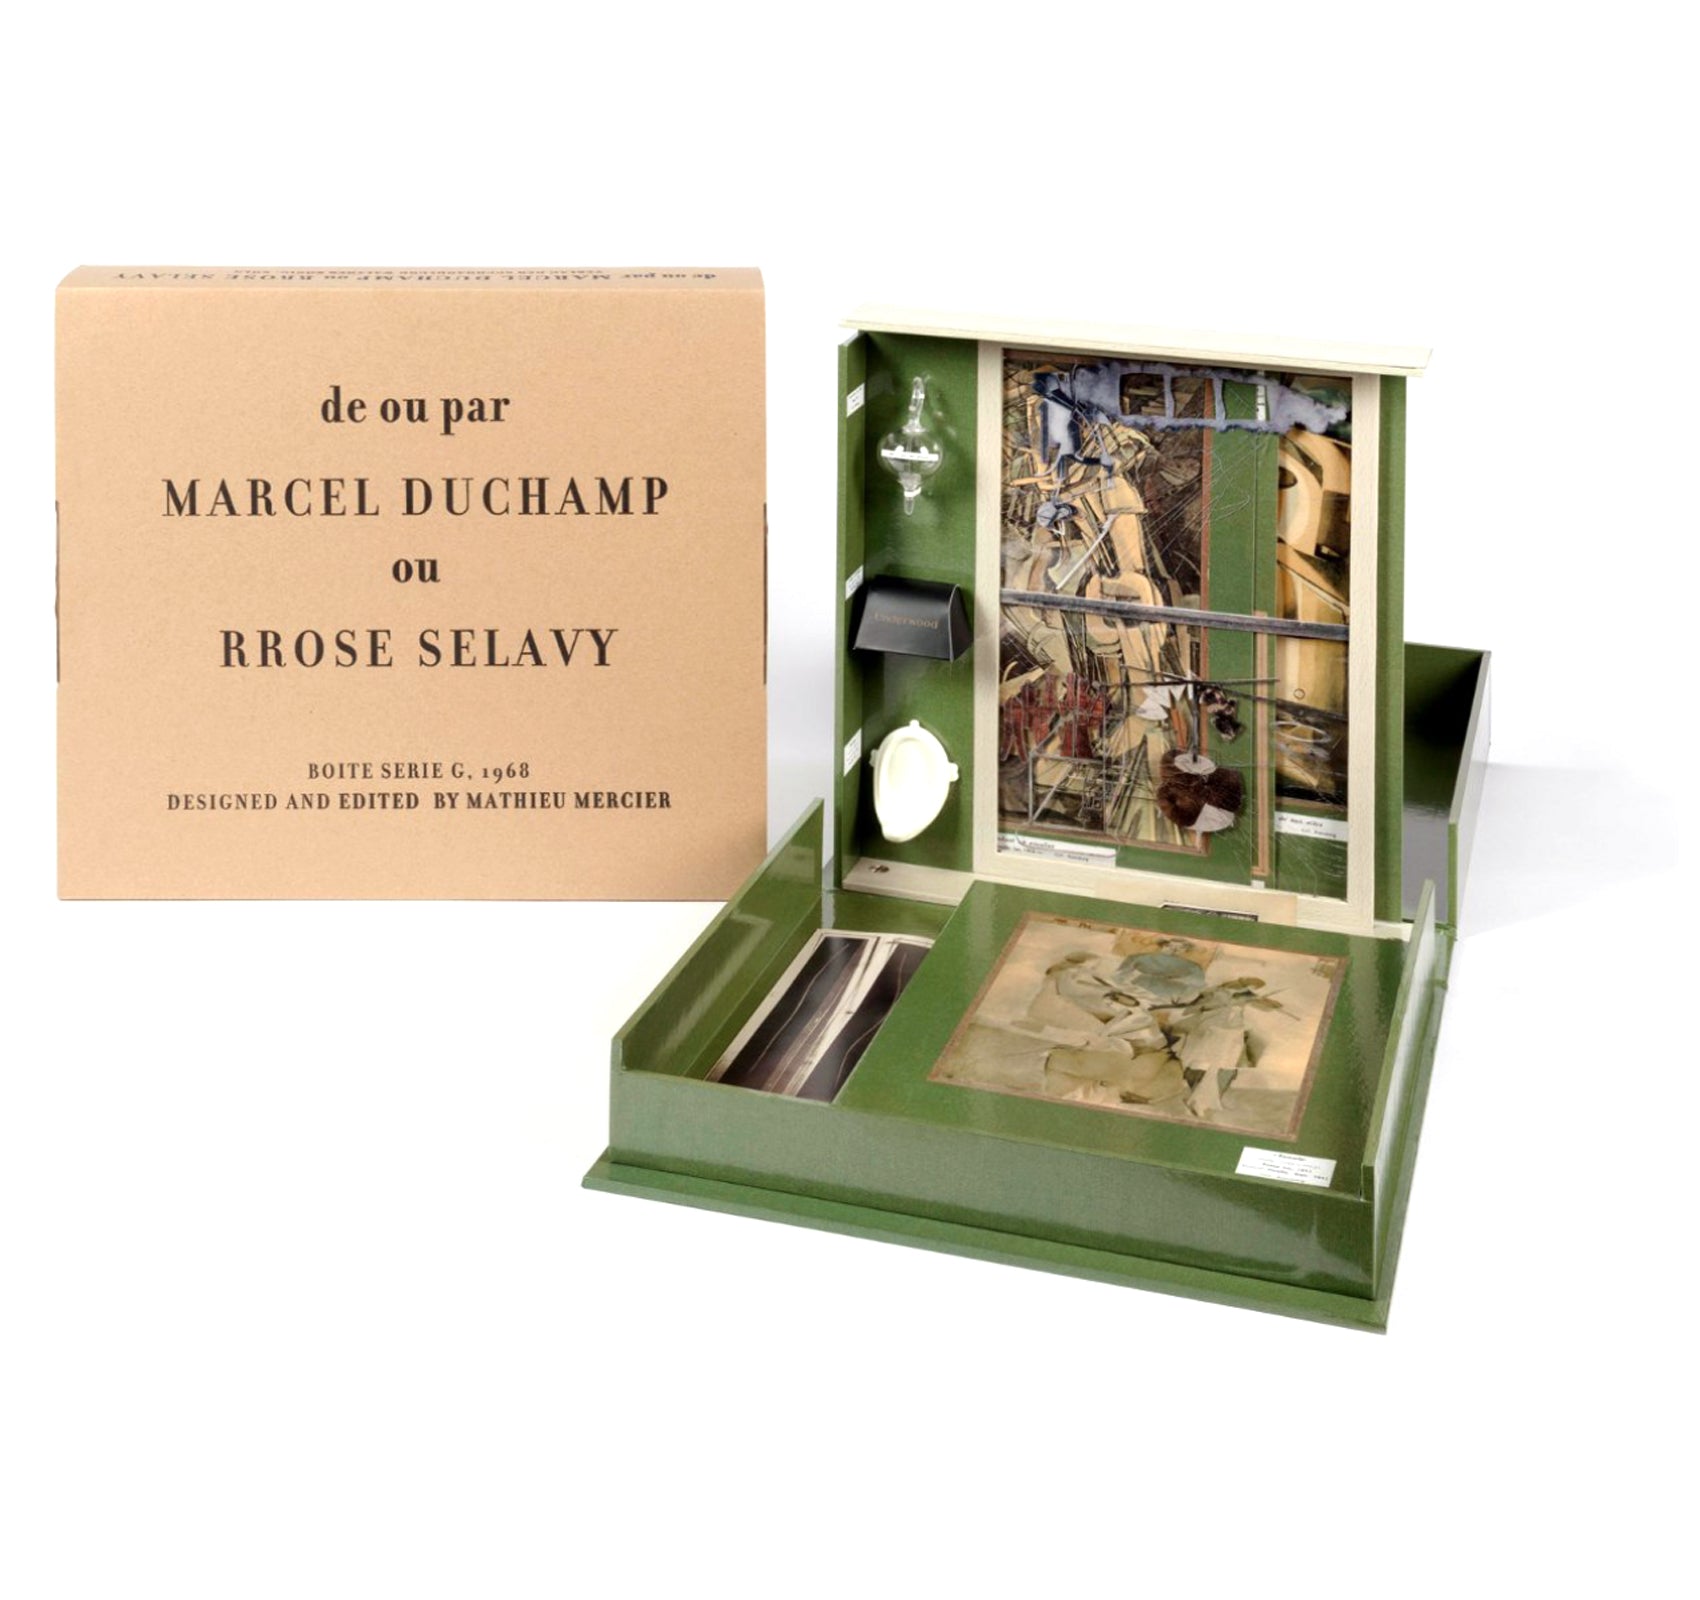 BOÎTE-EN-VALISE / MUSEUM IN A BOX by Marcel Duchamp – twelvebooks